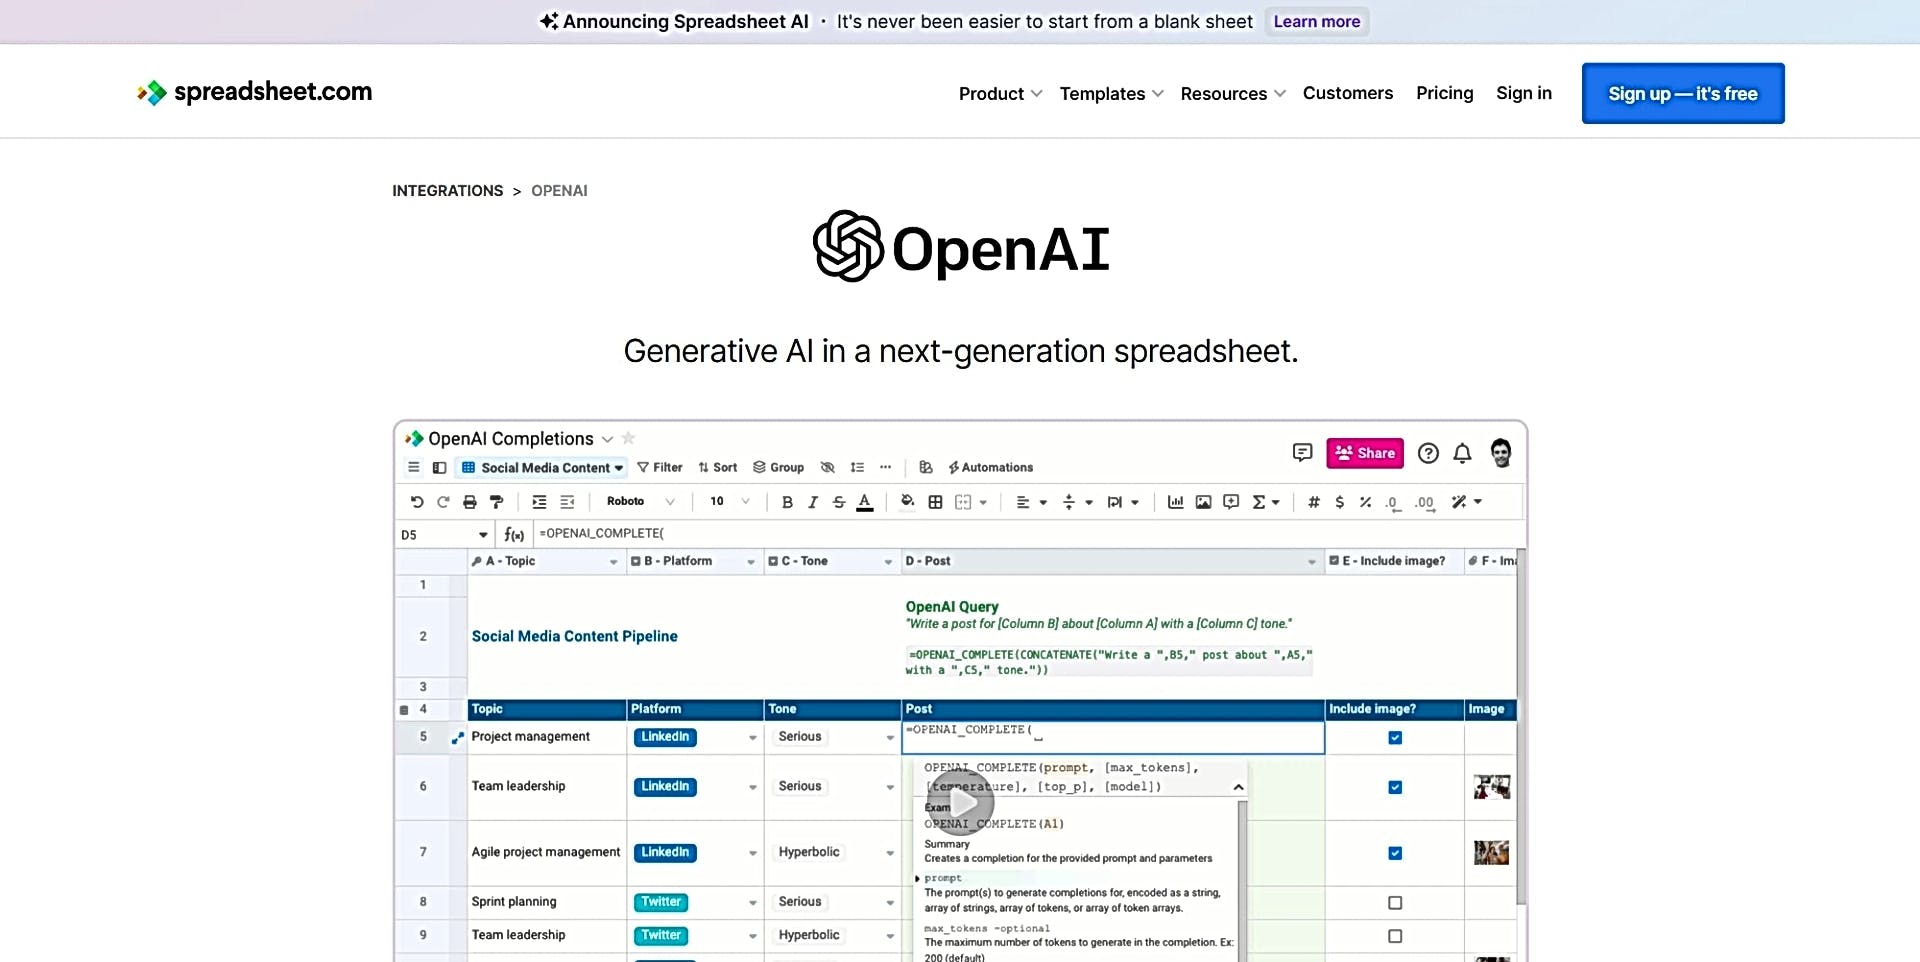 OpenAI in Spreadsheet featured